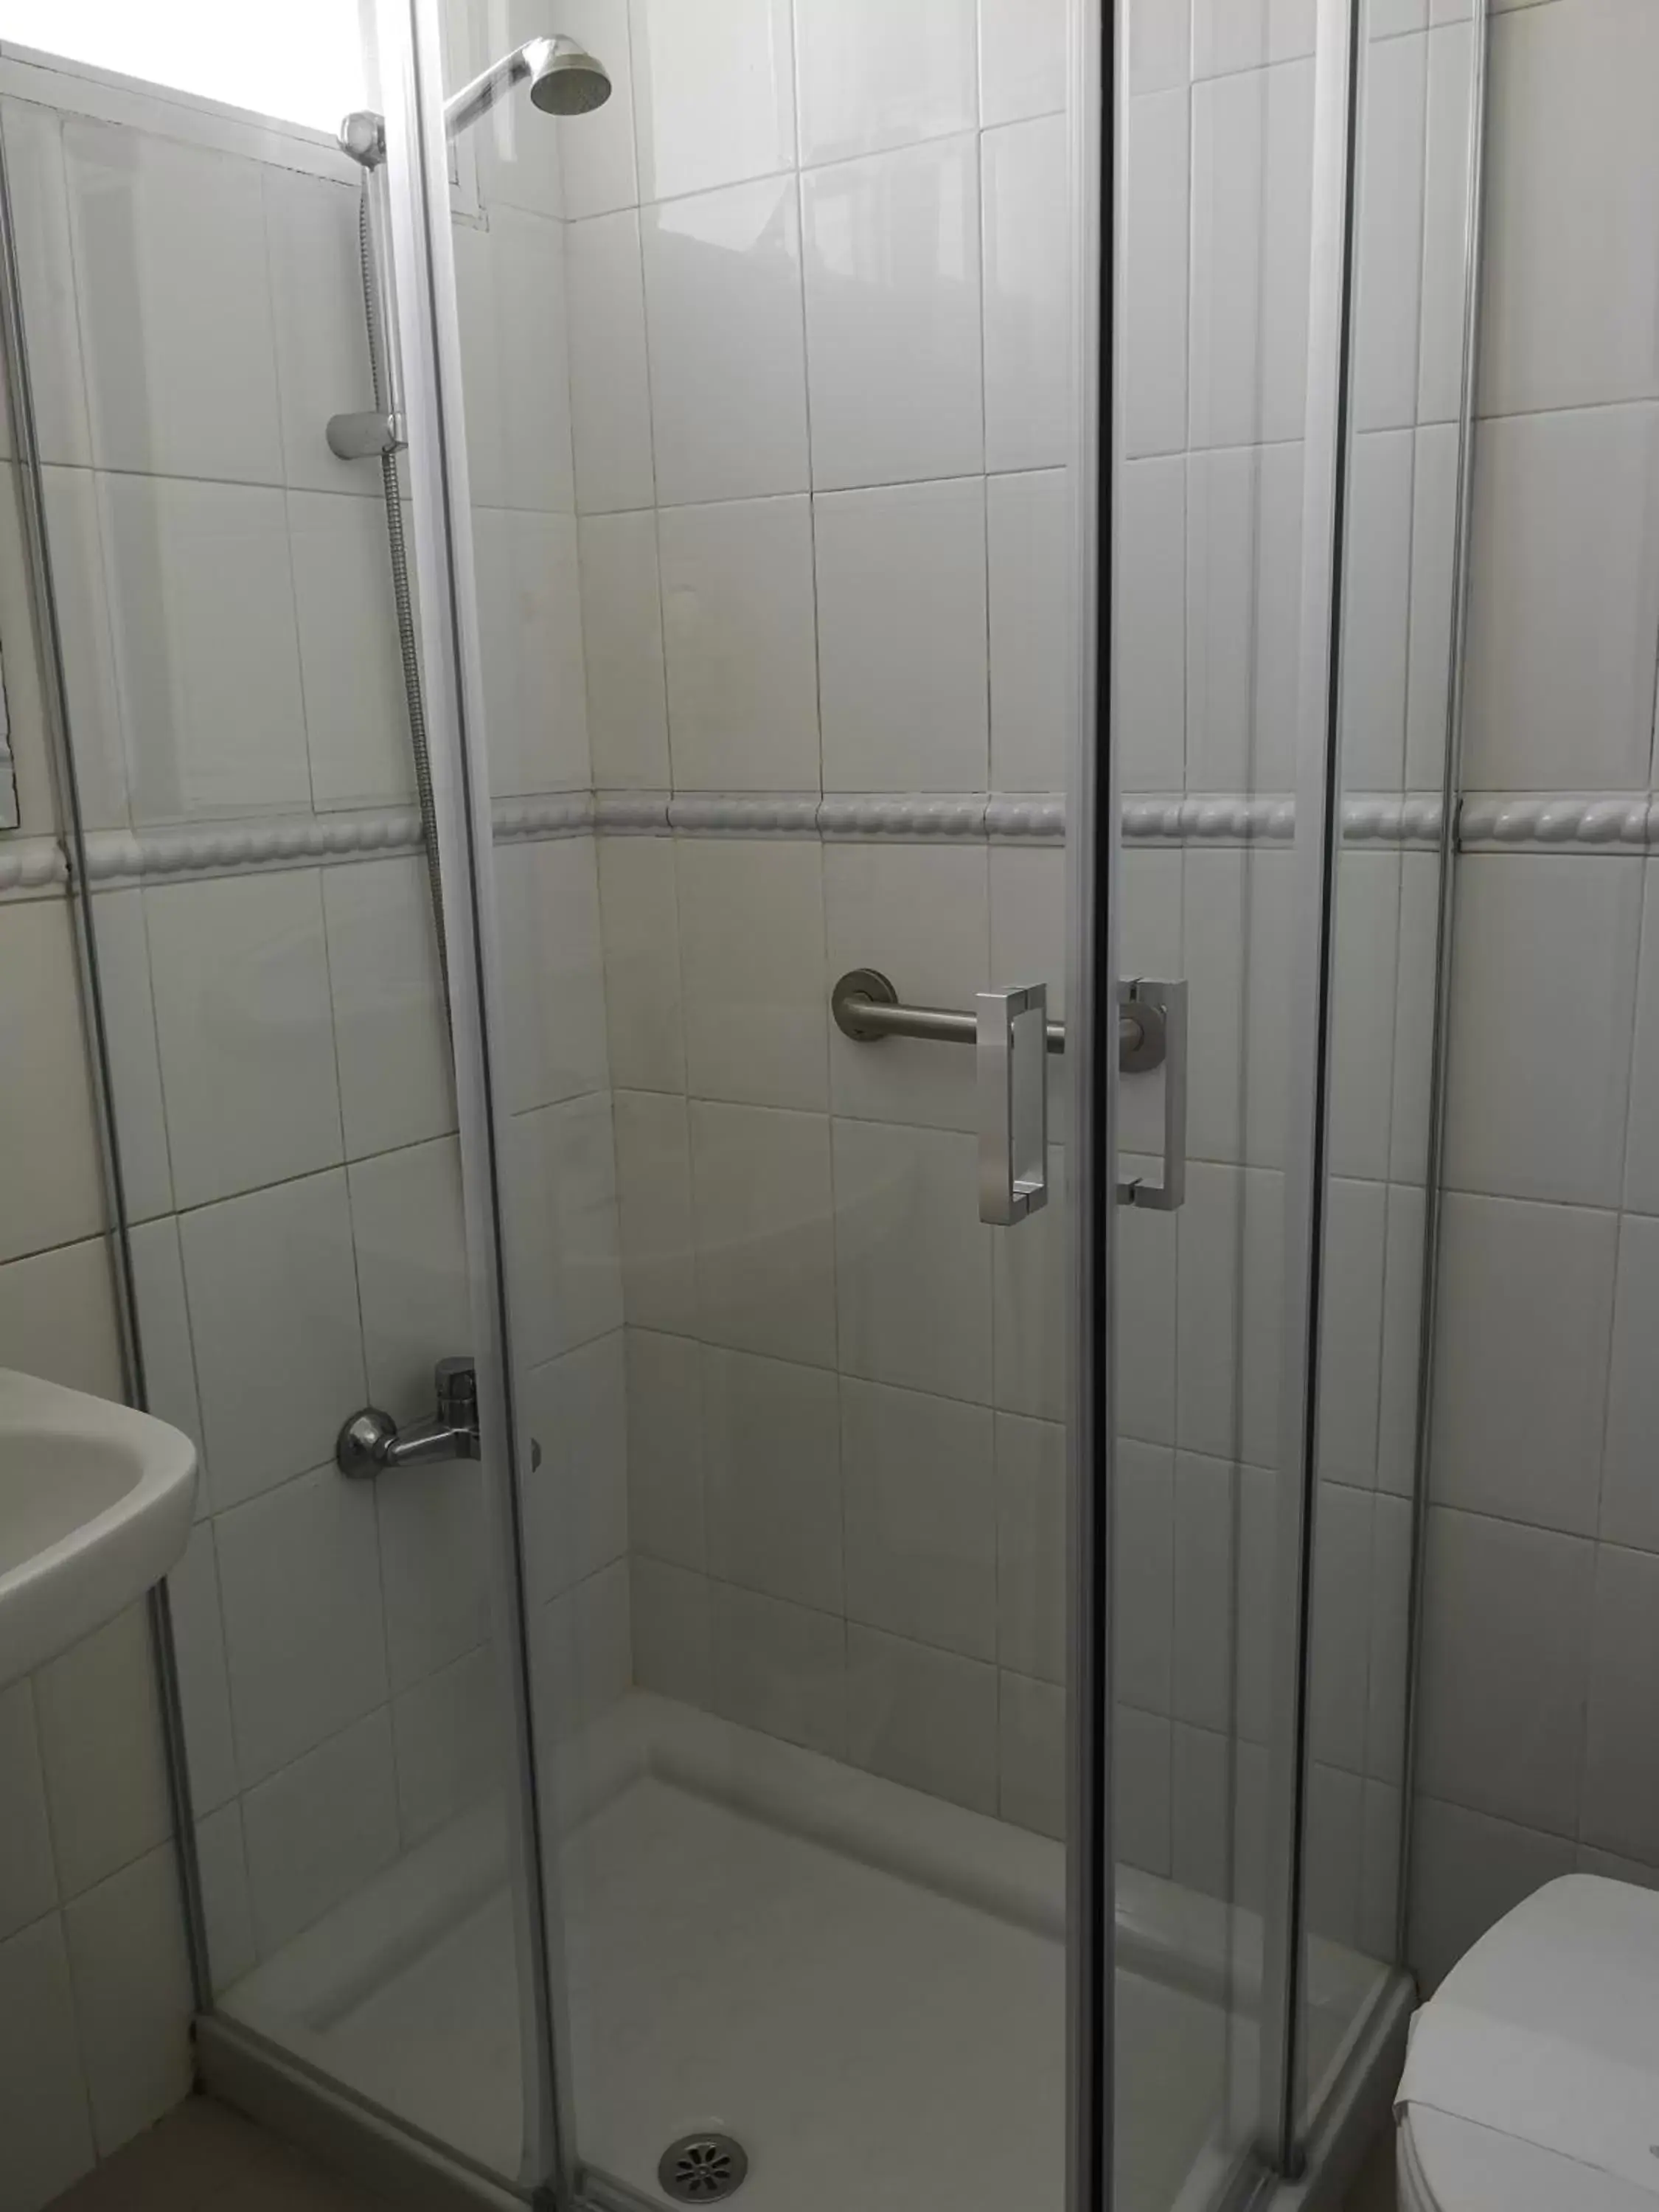 Bathroom in Hotel Veracruz